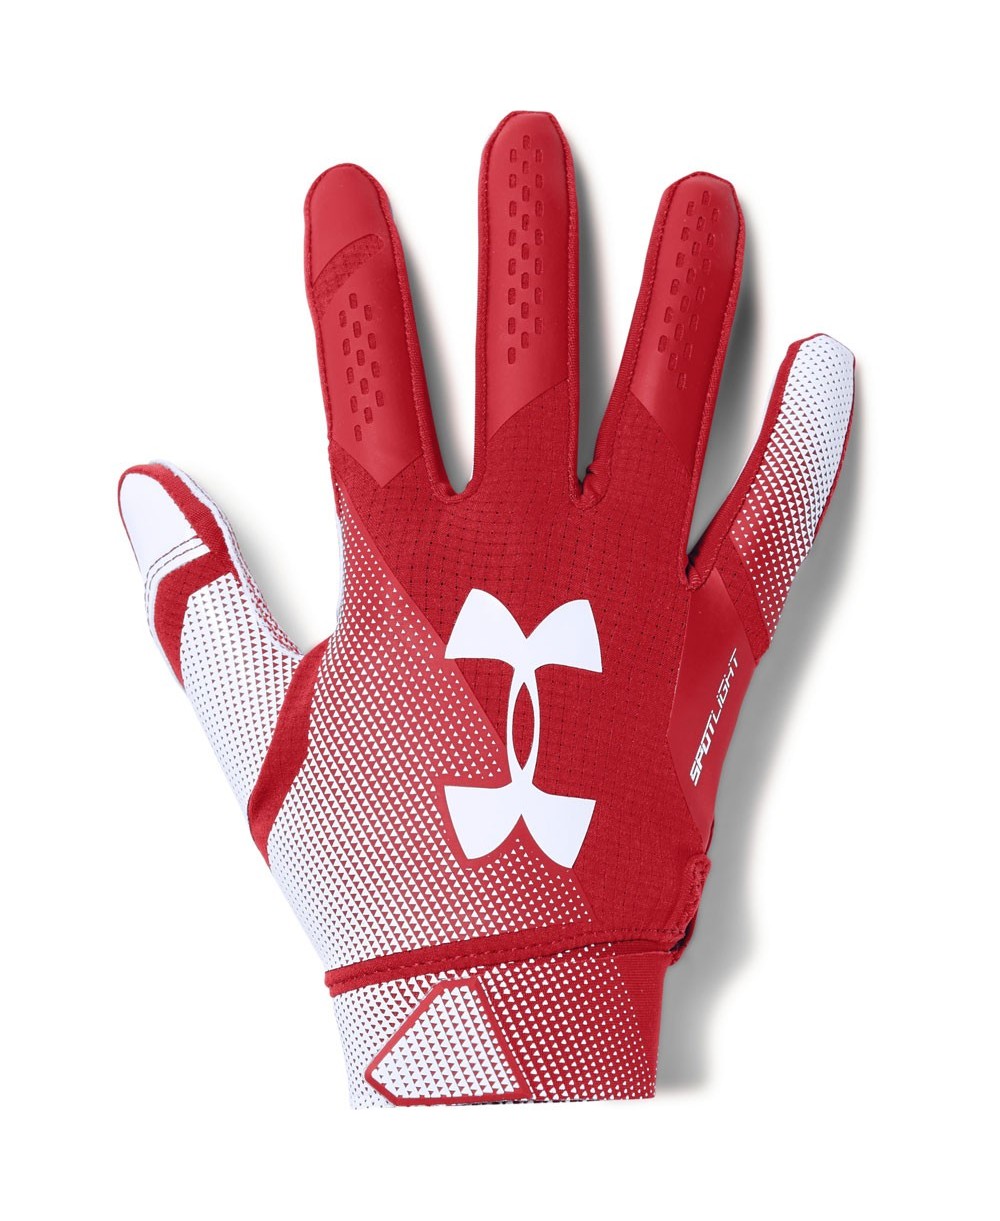 nfl football gloves